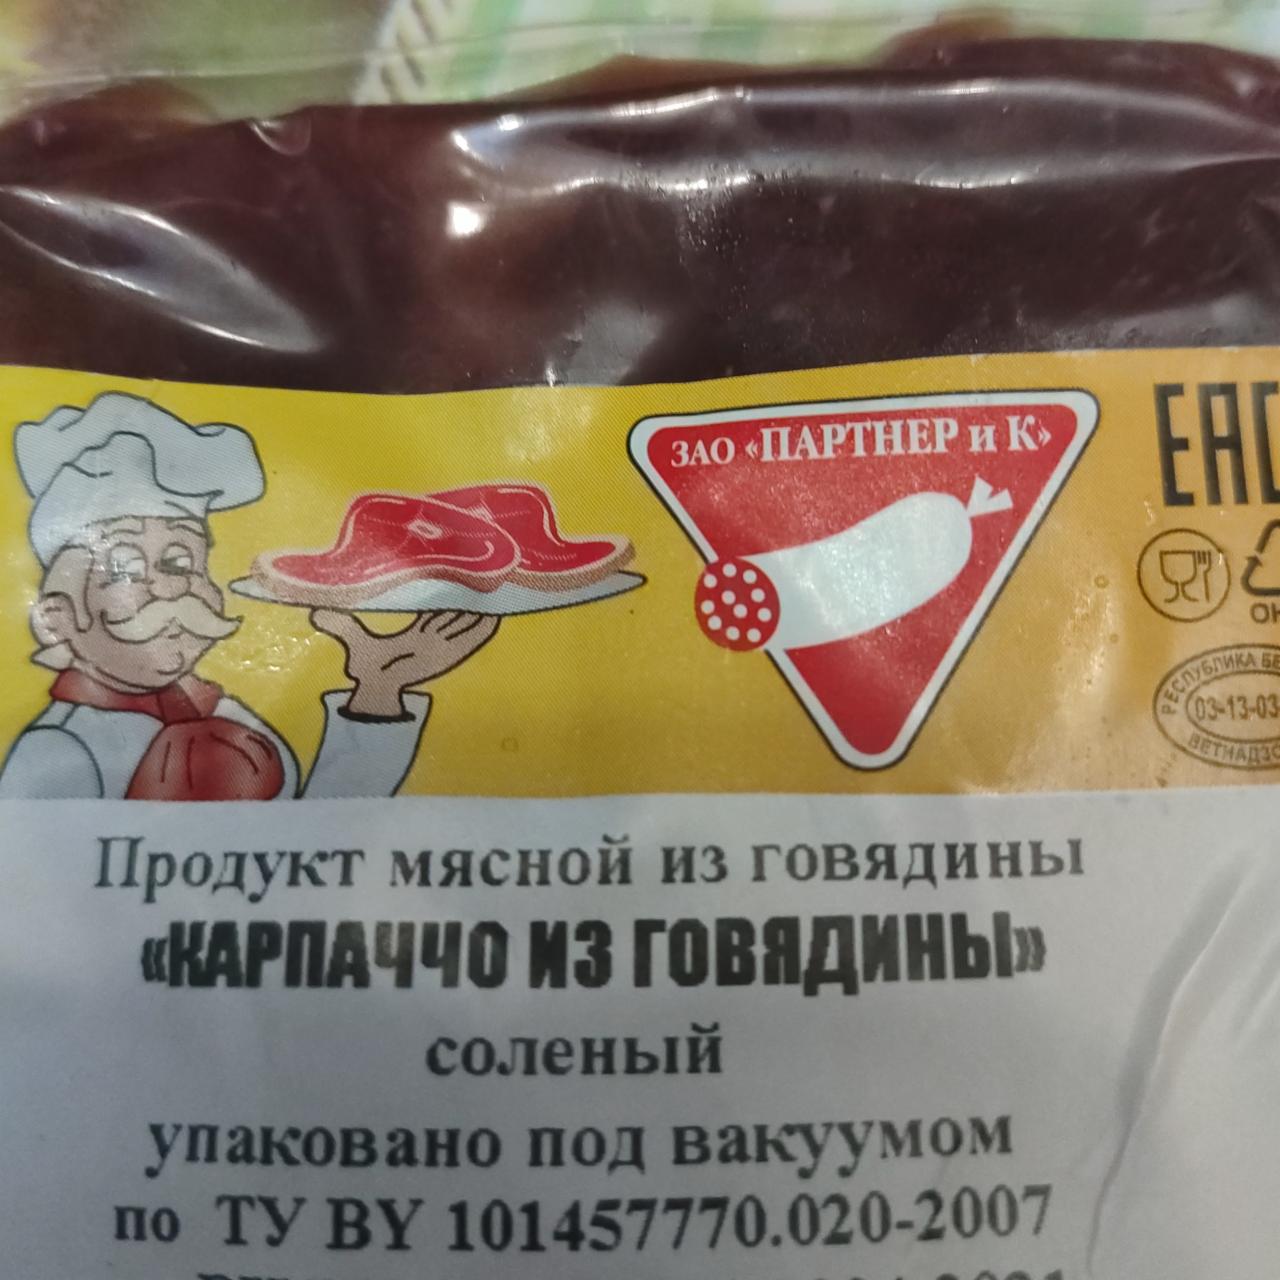 Фото - Продукт мясной из говядины Карпаччо из говядины солёный ЗАО Партнер и К